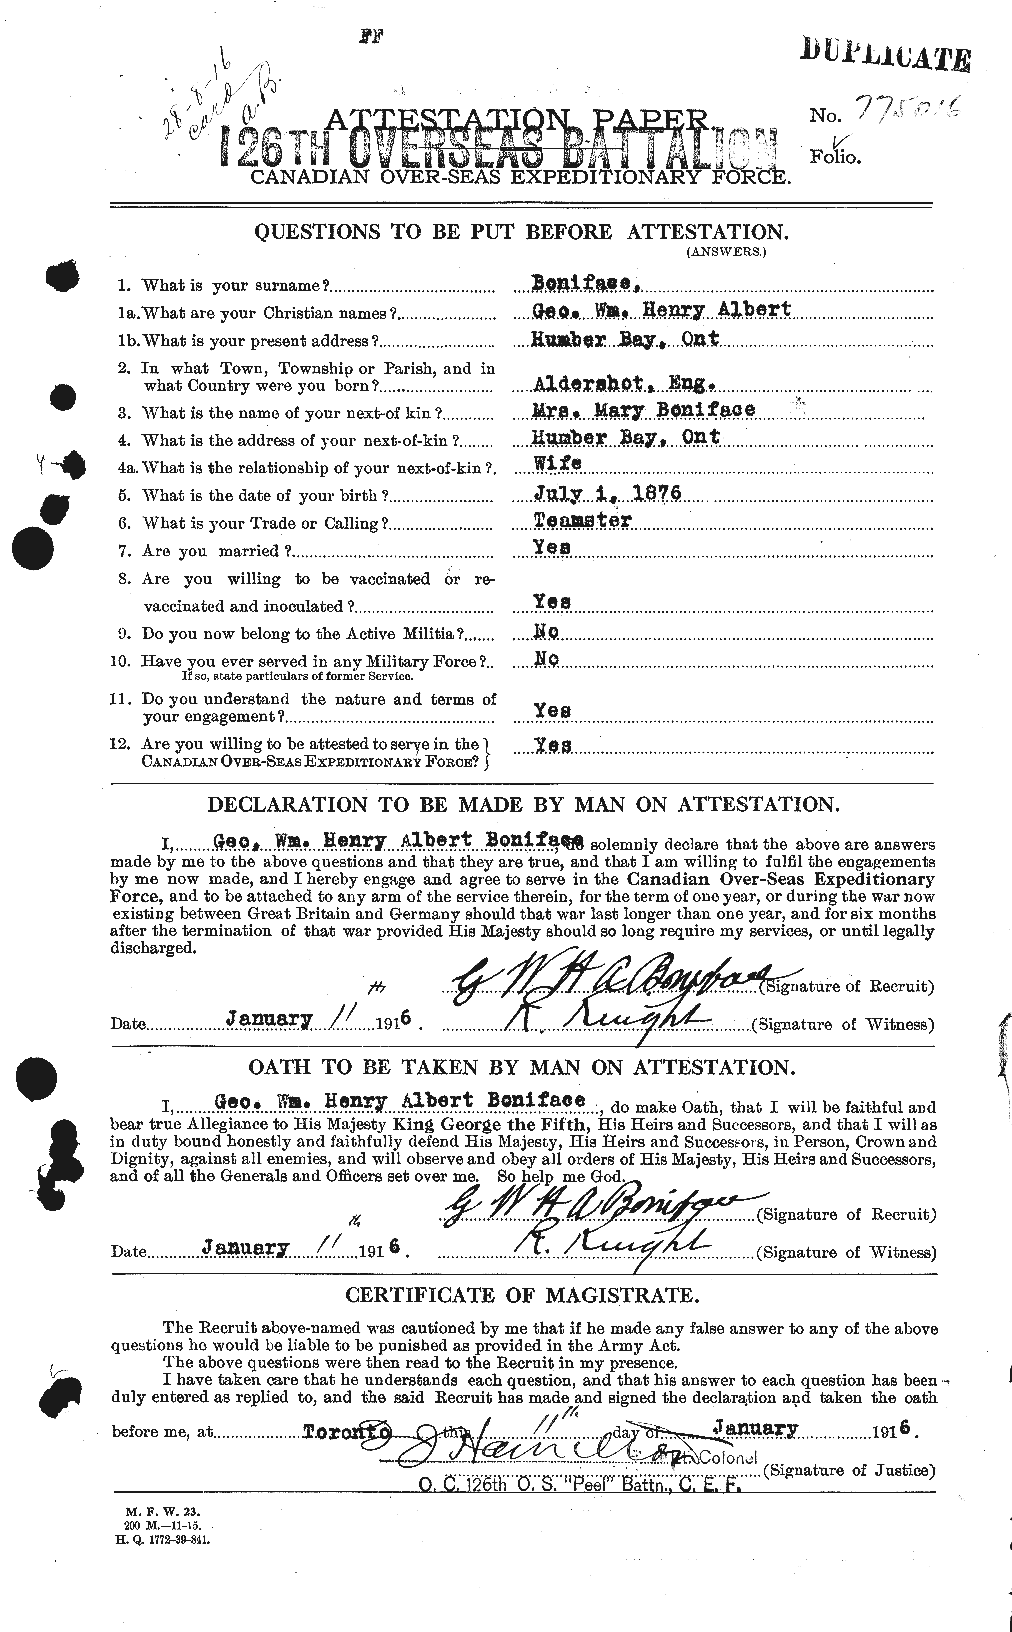 Dossiers du Personnel de la Première Guerre mondiale - CEC 250649a